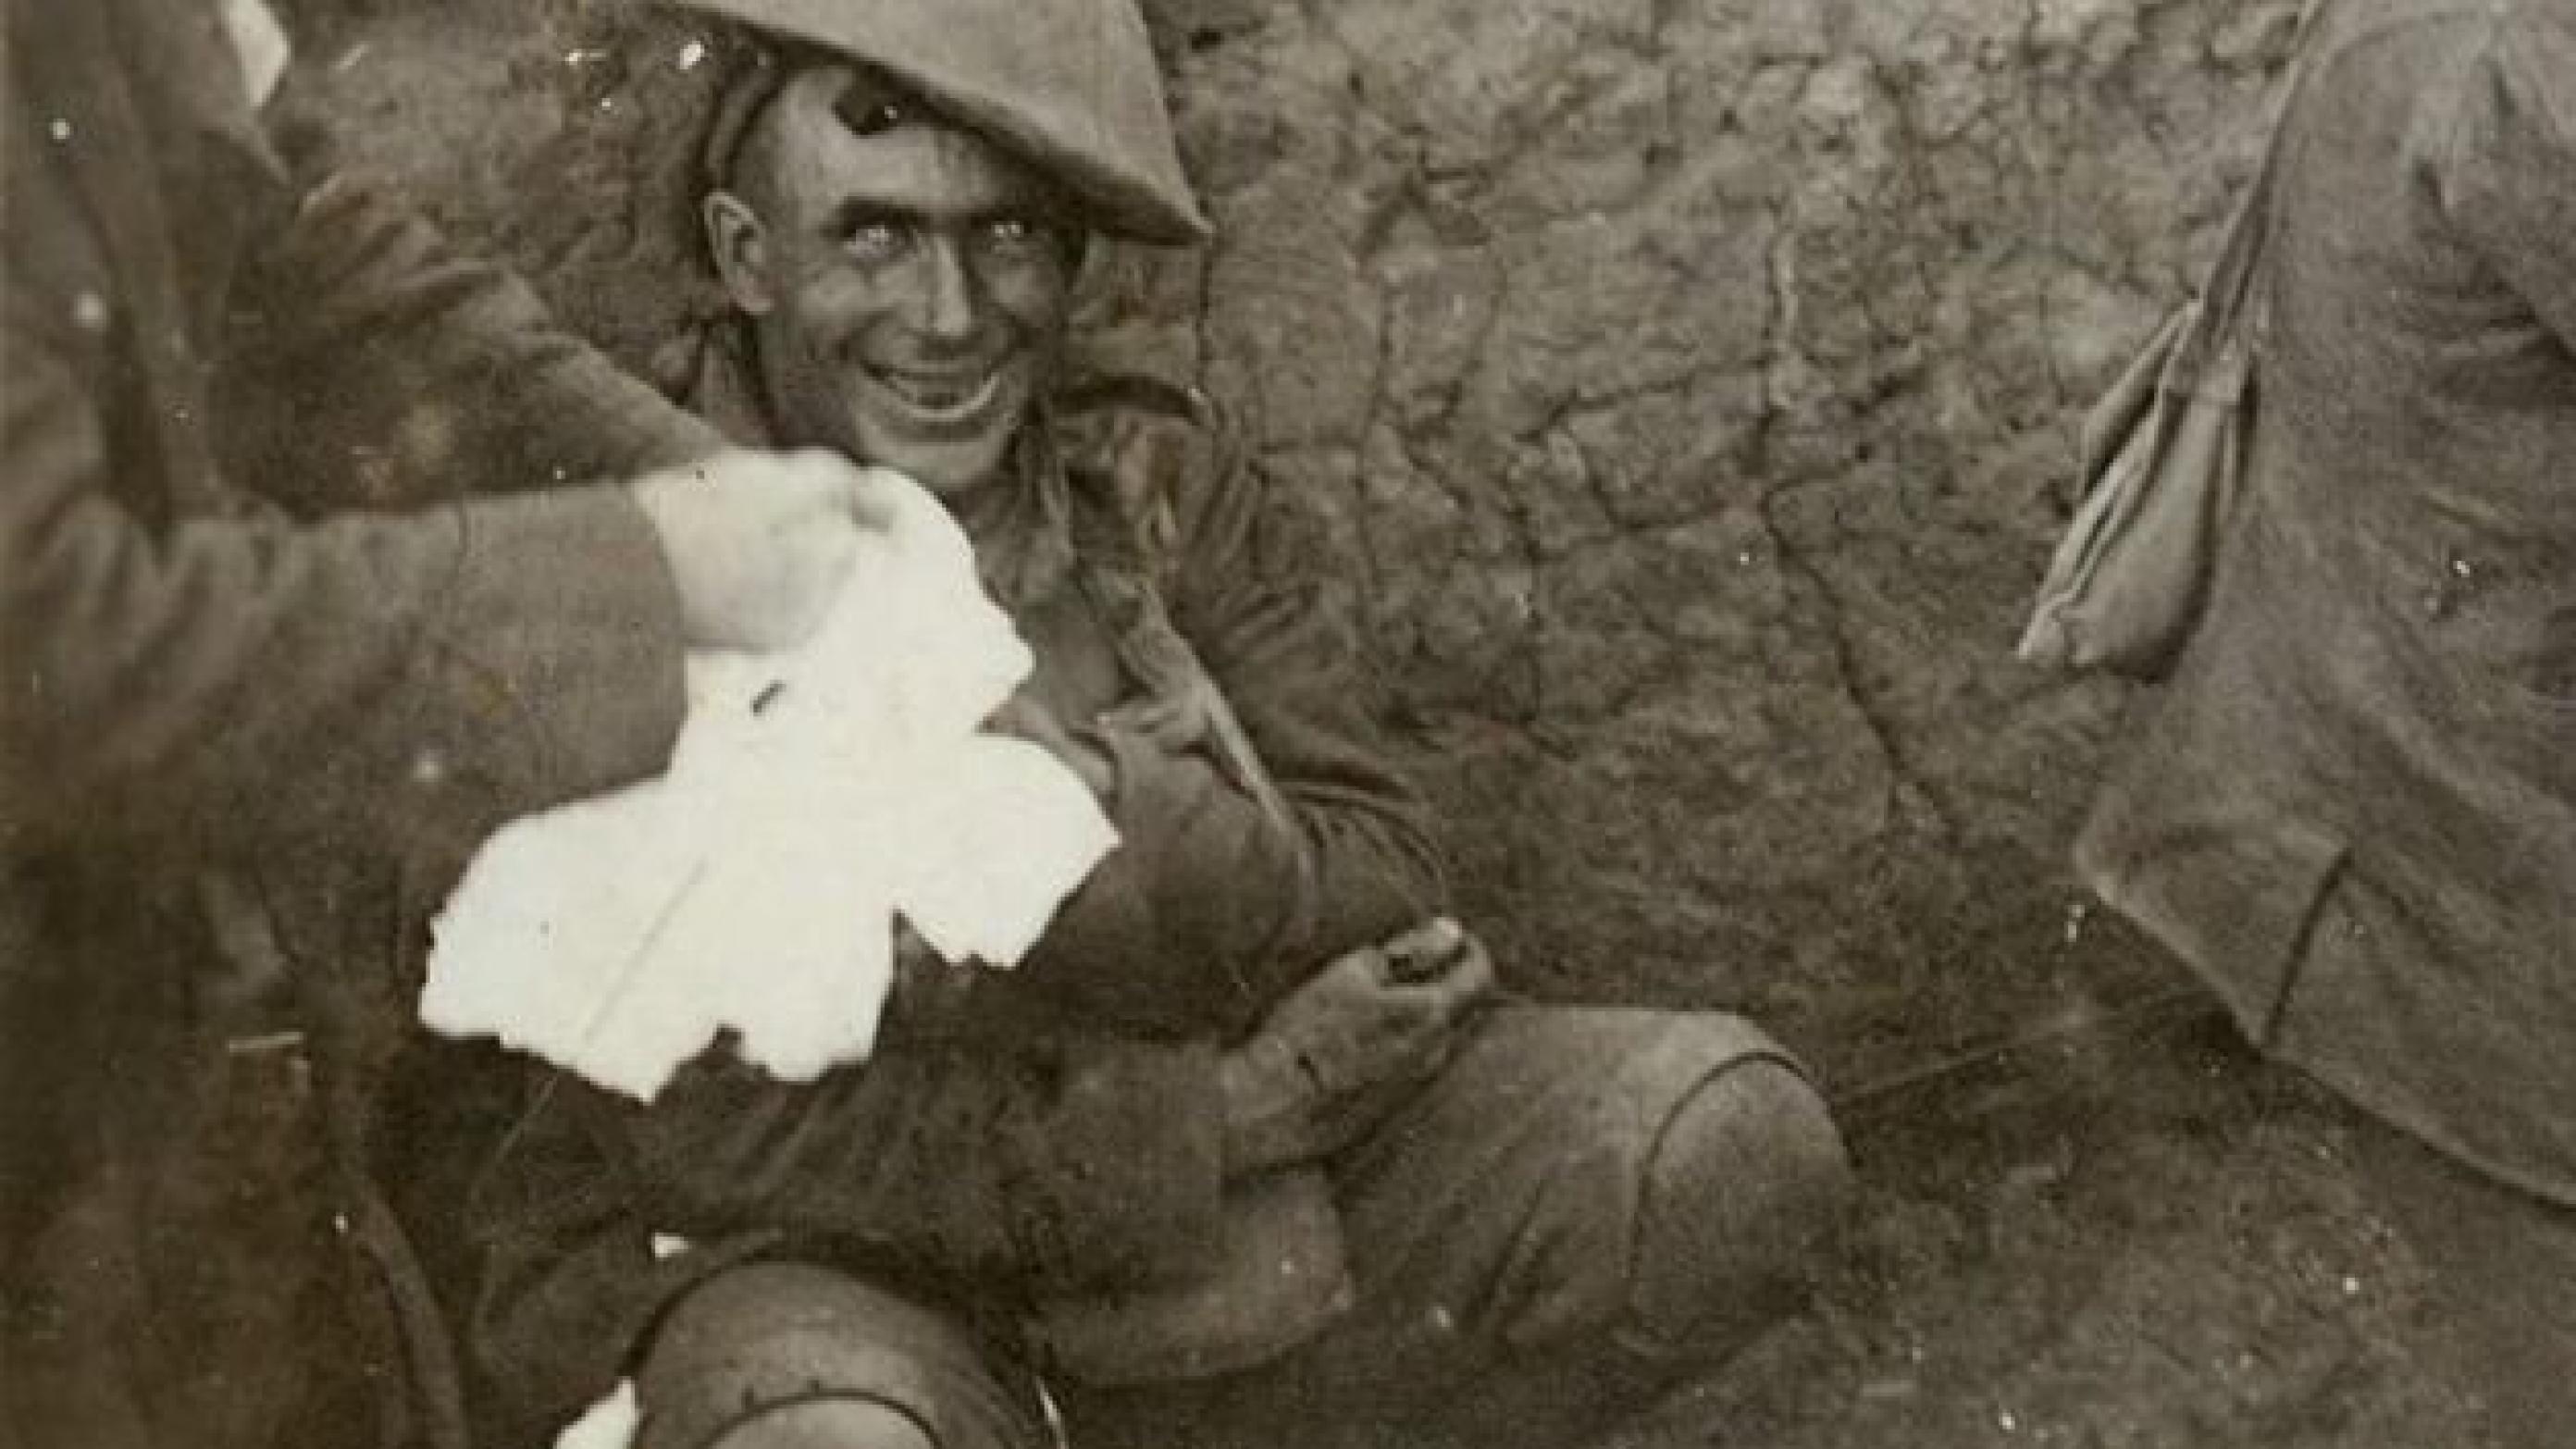 Somme-offensiven varede 140 dage og kostede over en million dræbte og sårede. Den britiske soldat på billedet lider af granatchok. Smilet røber det: Dengang smilede man aldrig, når man blev fotograferet. 